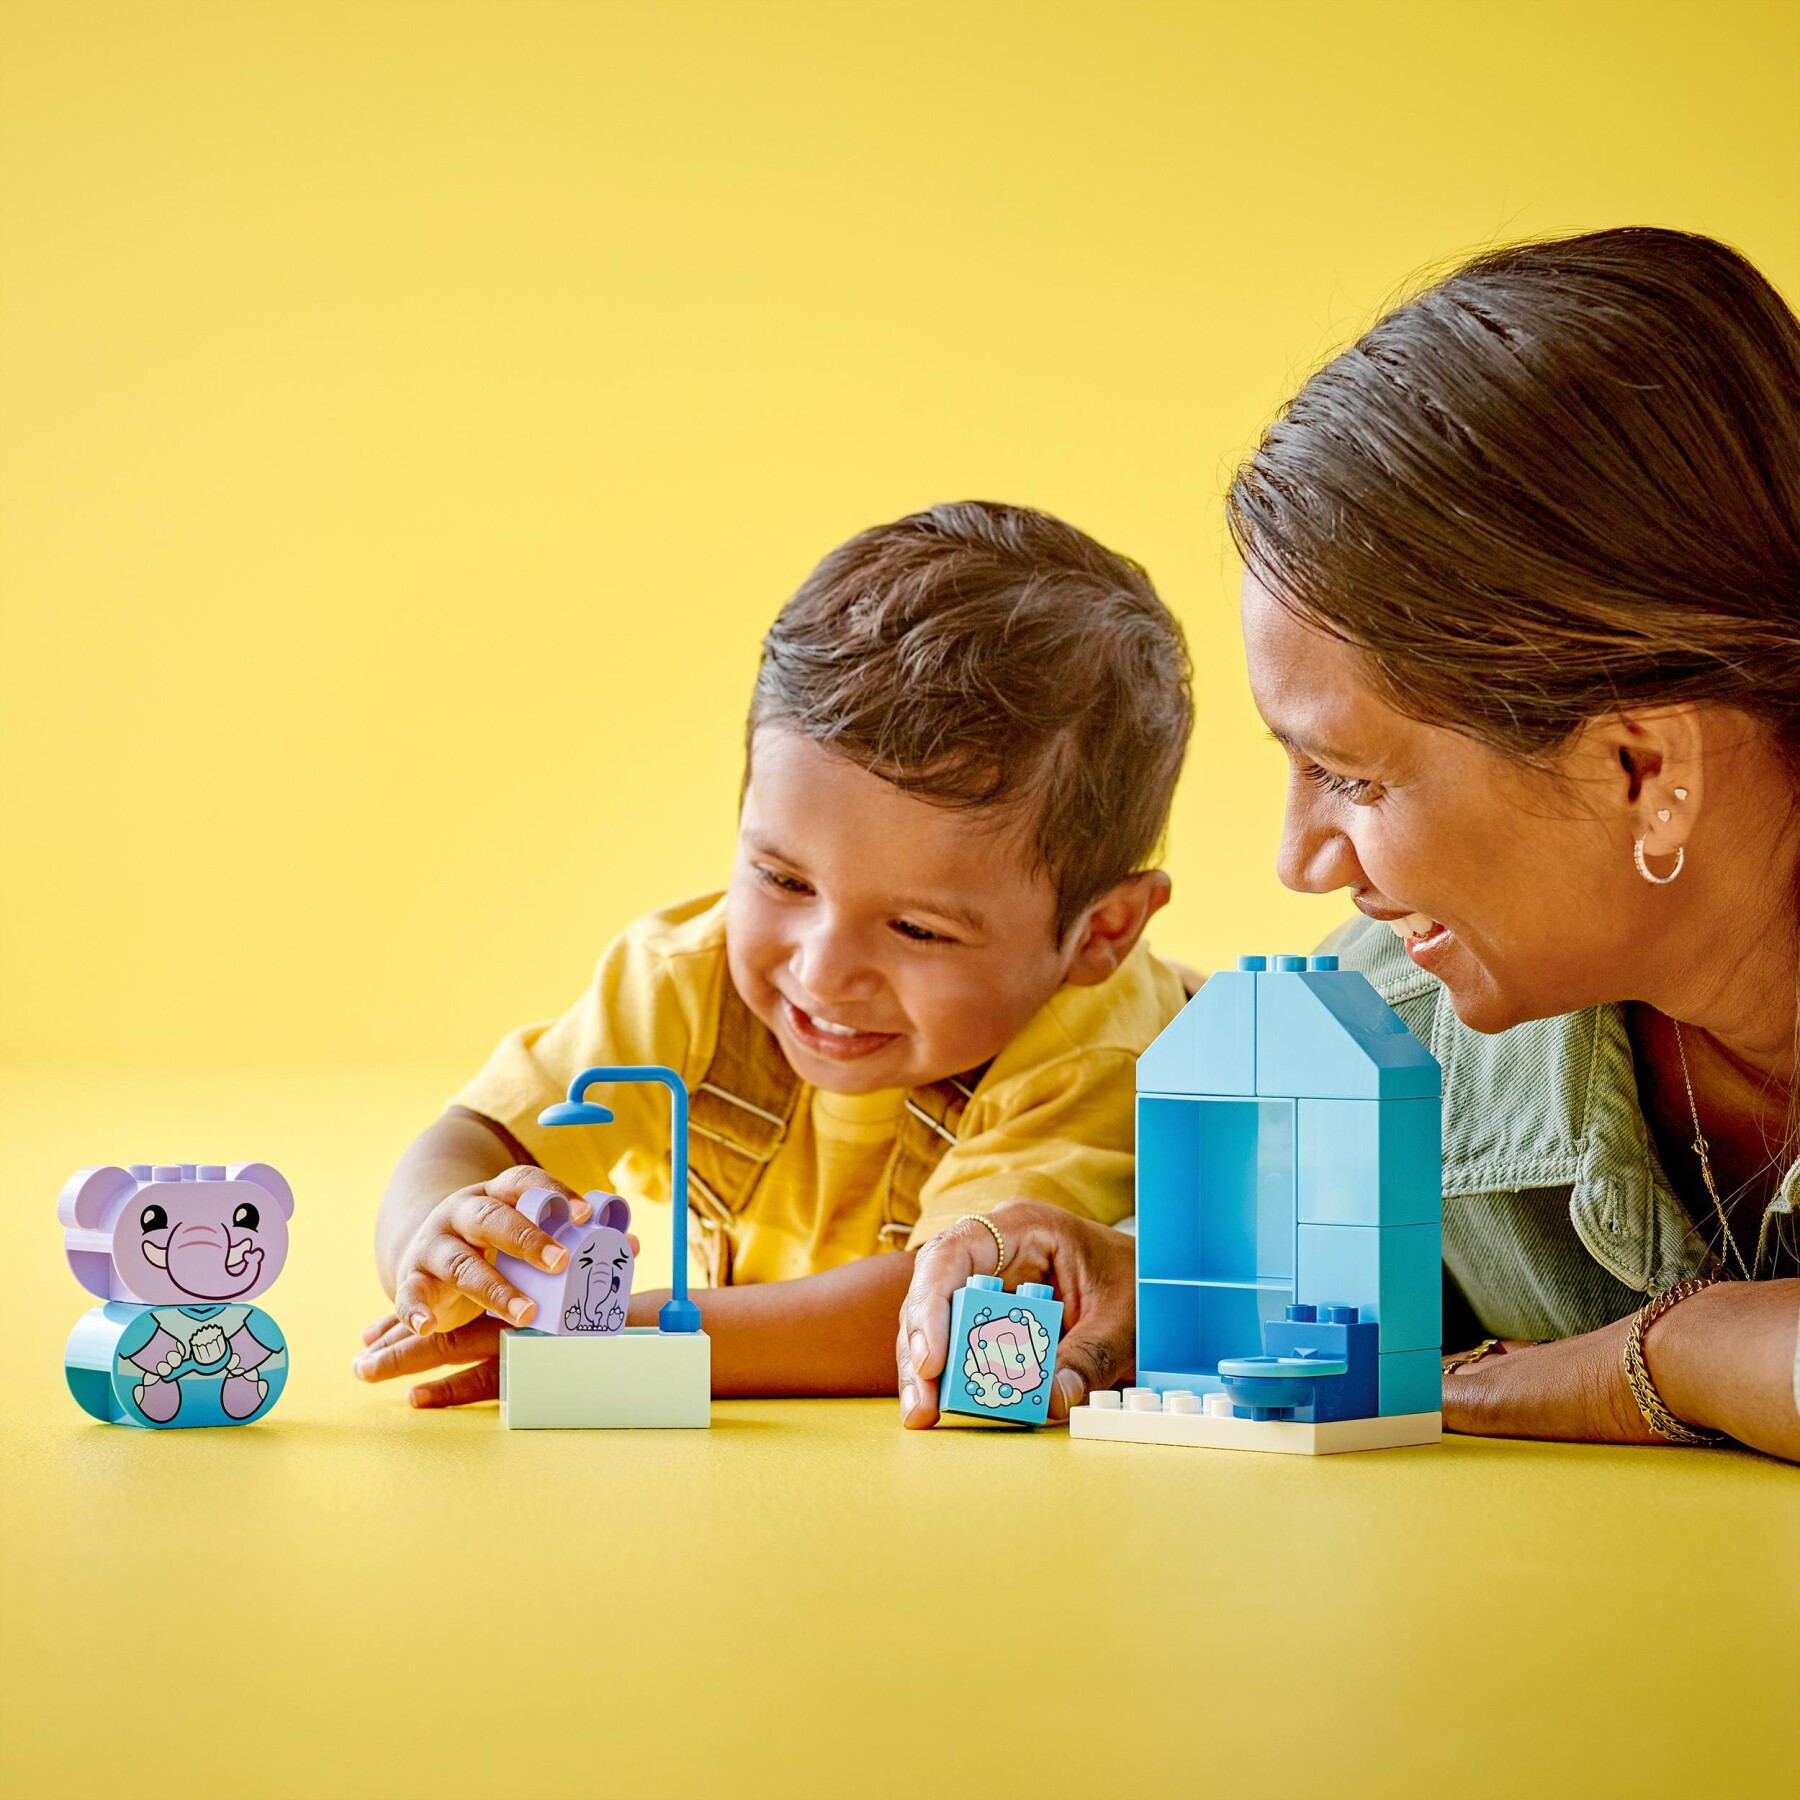 Lego duplo 10413 attività quotidiane: il bagnetto, giochi per bambini da 1.5 anni, playset didattico con 2 elefanti giocattolo - LEGO DUPLO